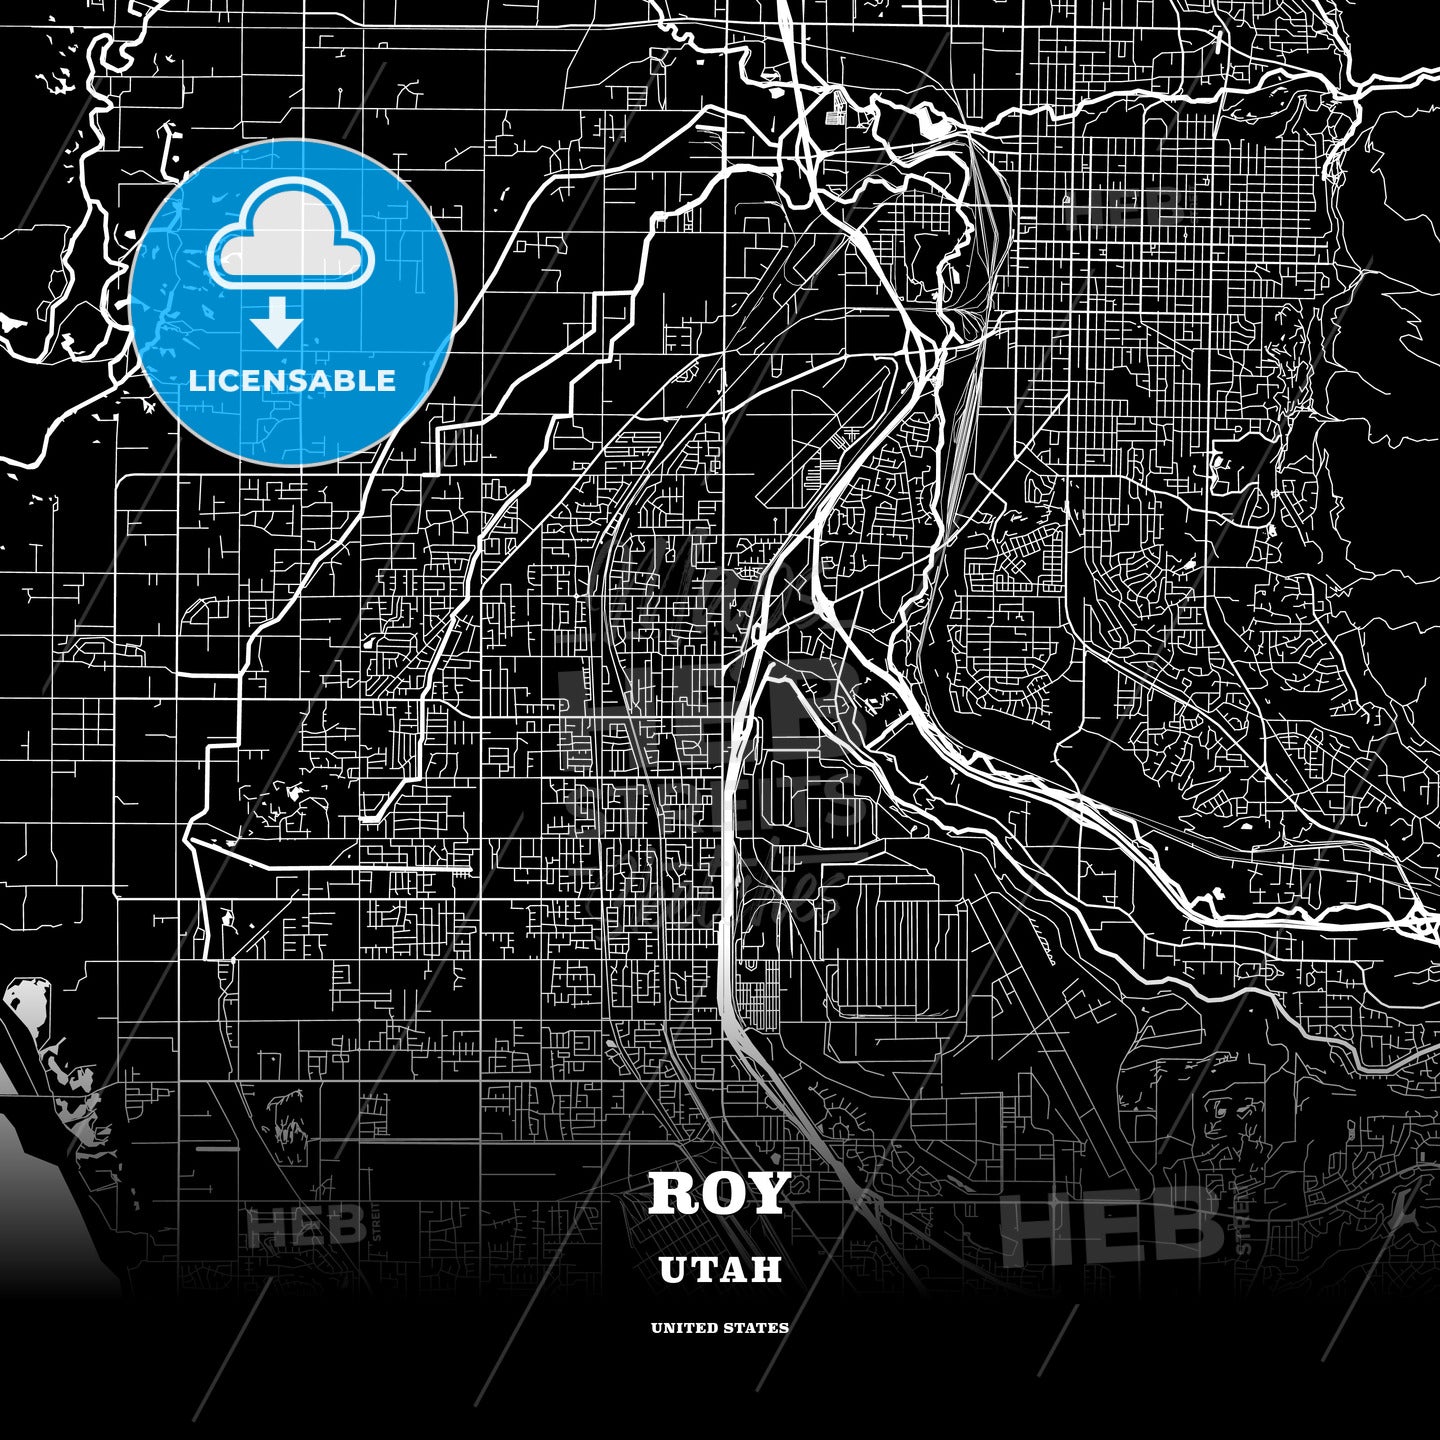 Roy, Utah, USA map